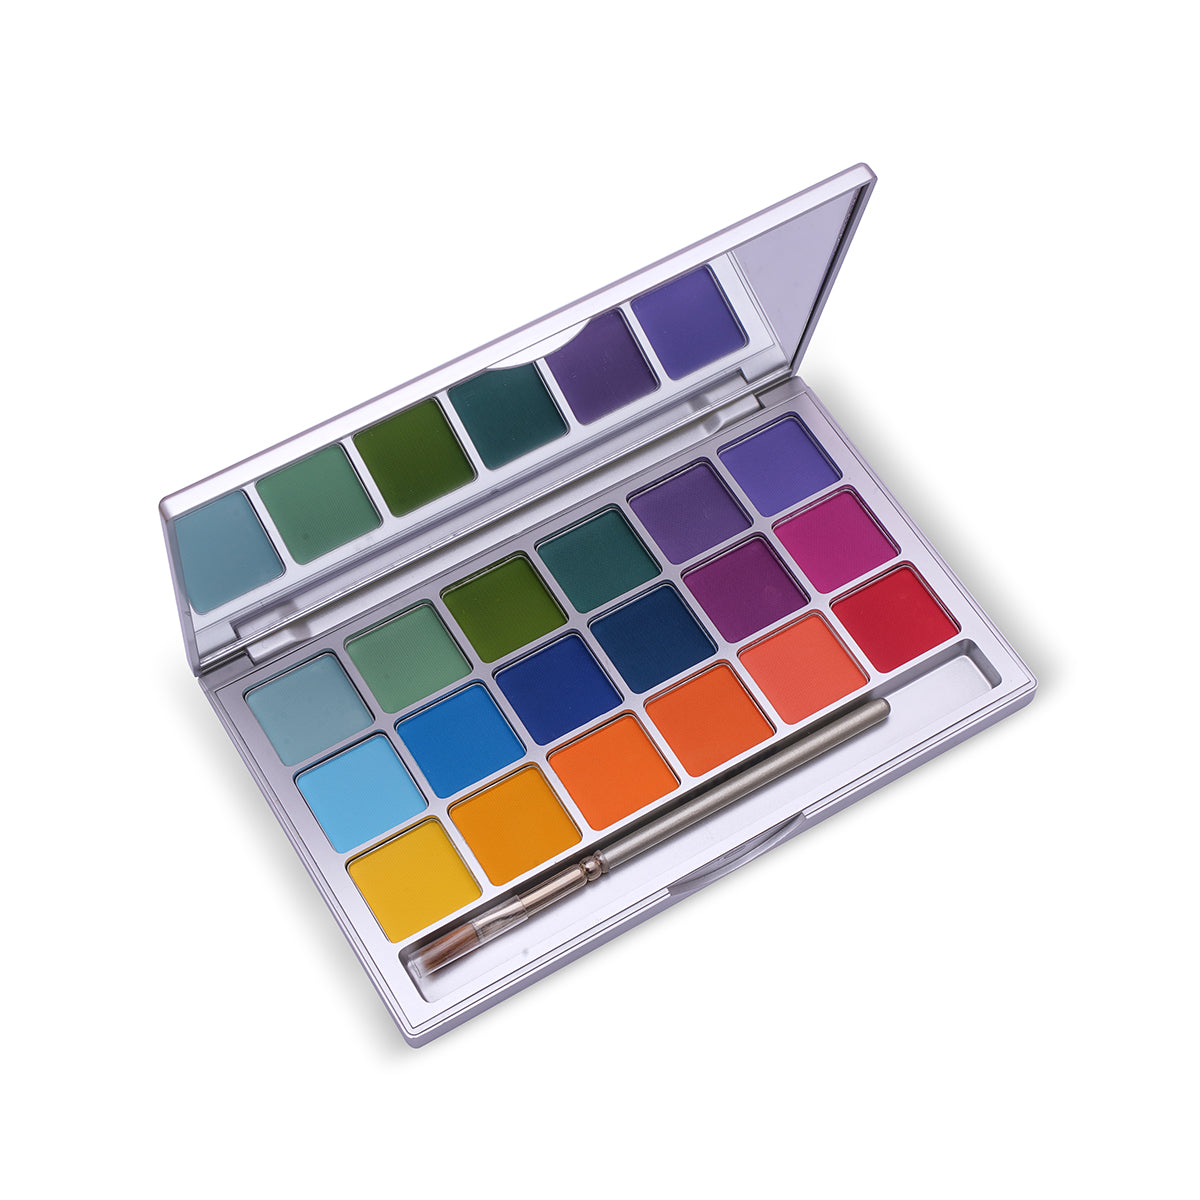 Buy  Kryolan - Variety Eyeshadow Palette - 18 Colors V2 Bright - at Best Price Online in Pakistan